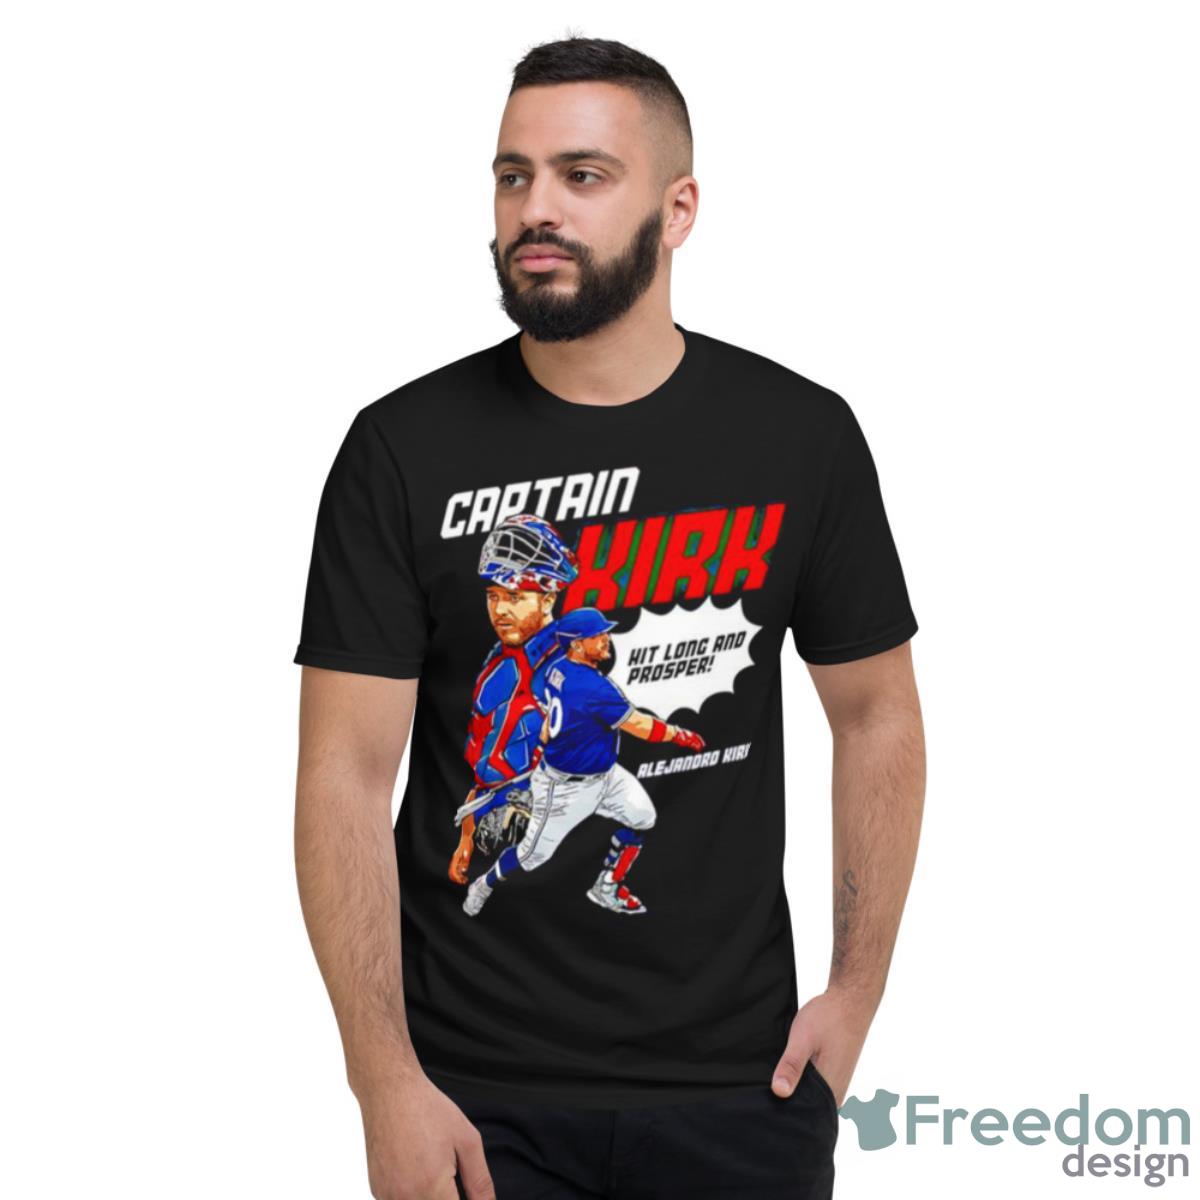 Captain Alejandro Kirk Hit Long And Prosper Shirt - Freedomdesign